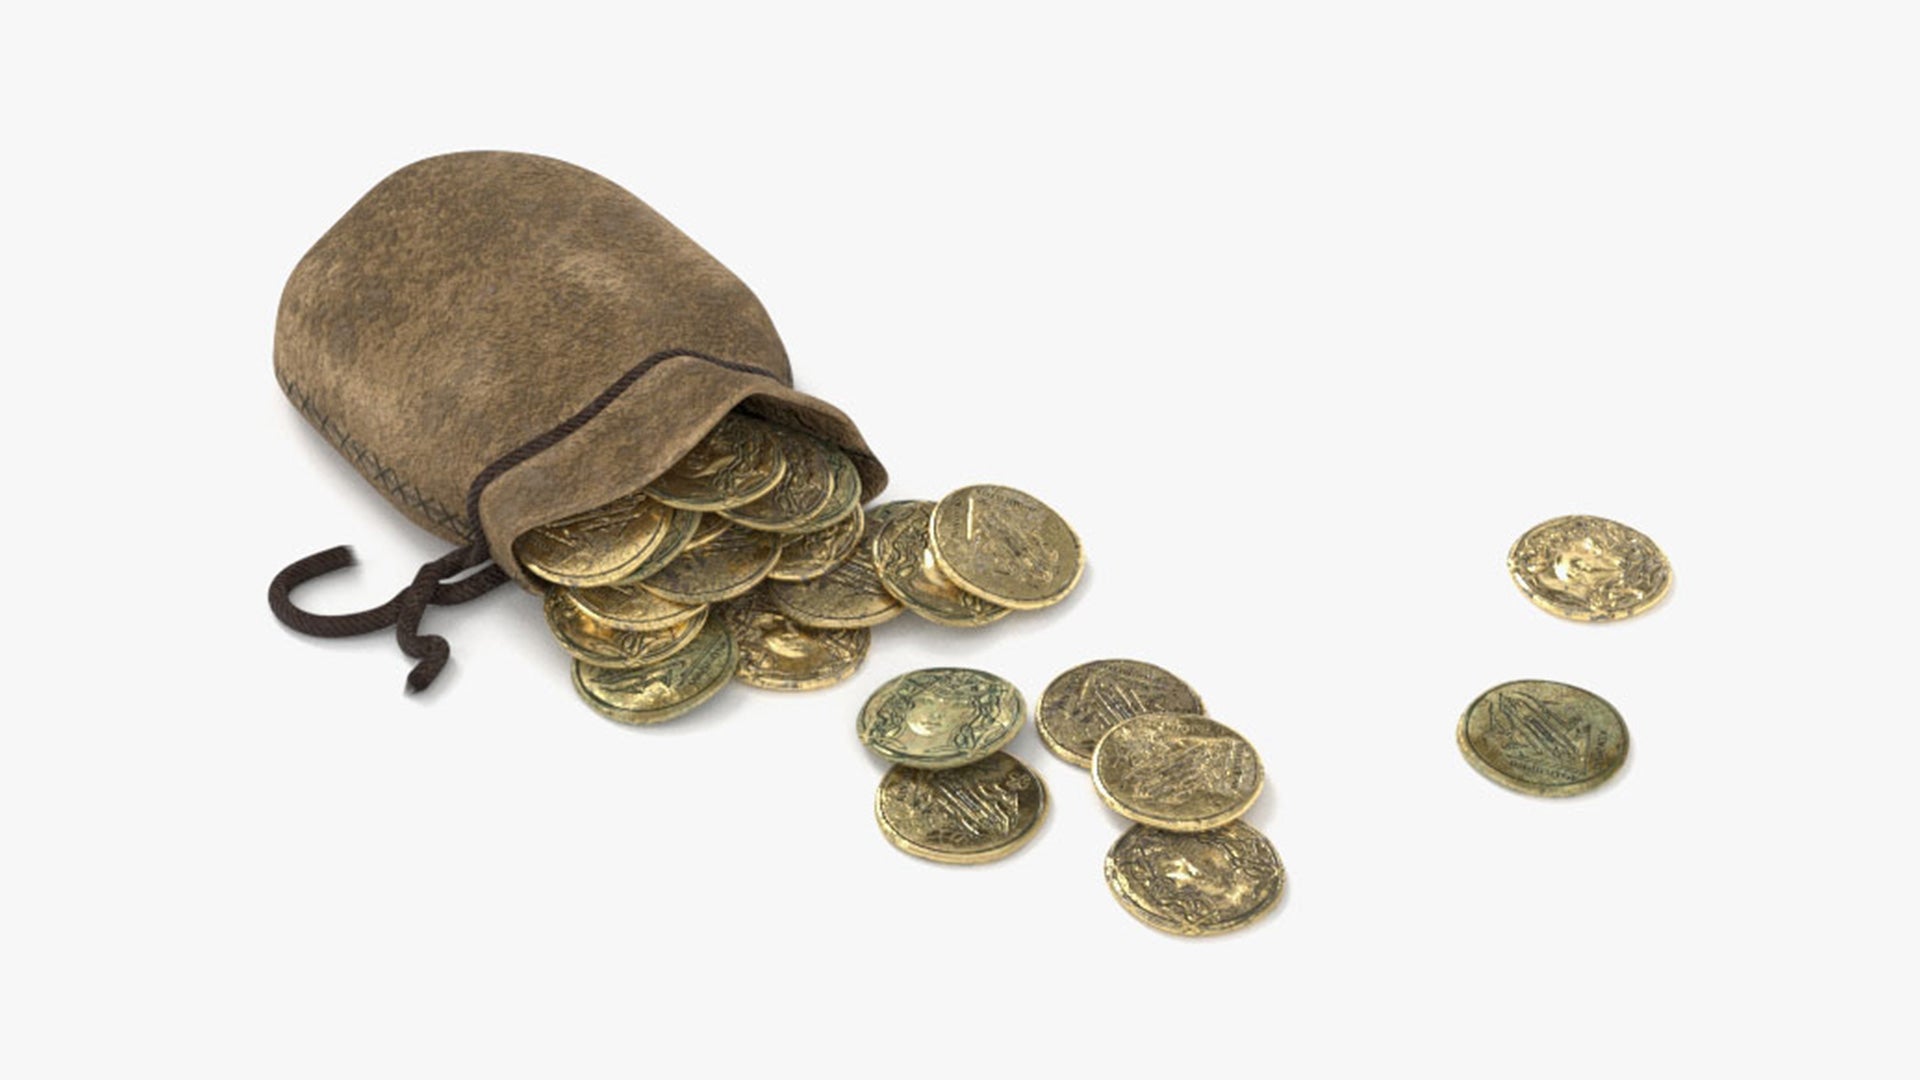 pouch gold coins leather medieval fantasy 3d model blender obj